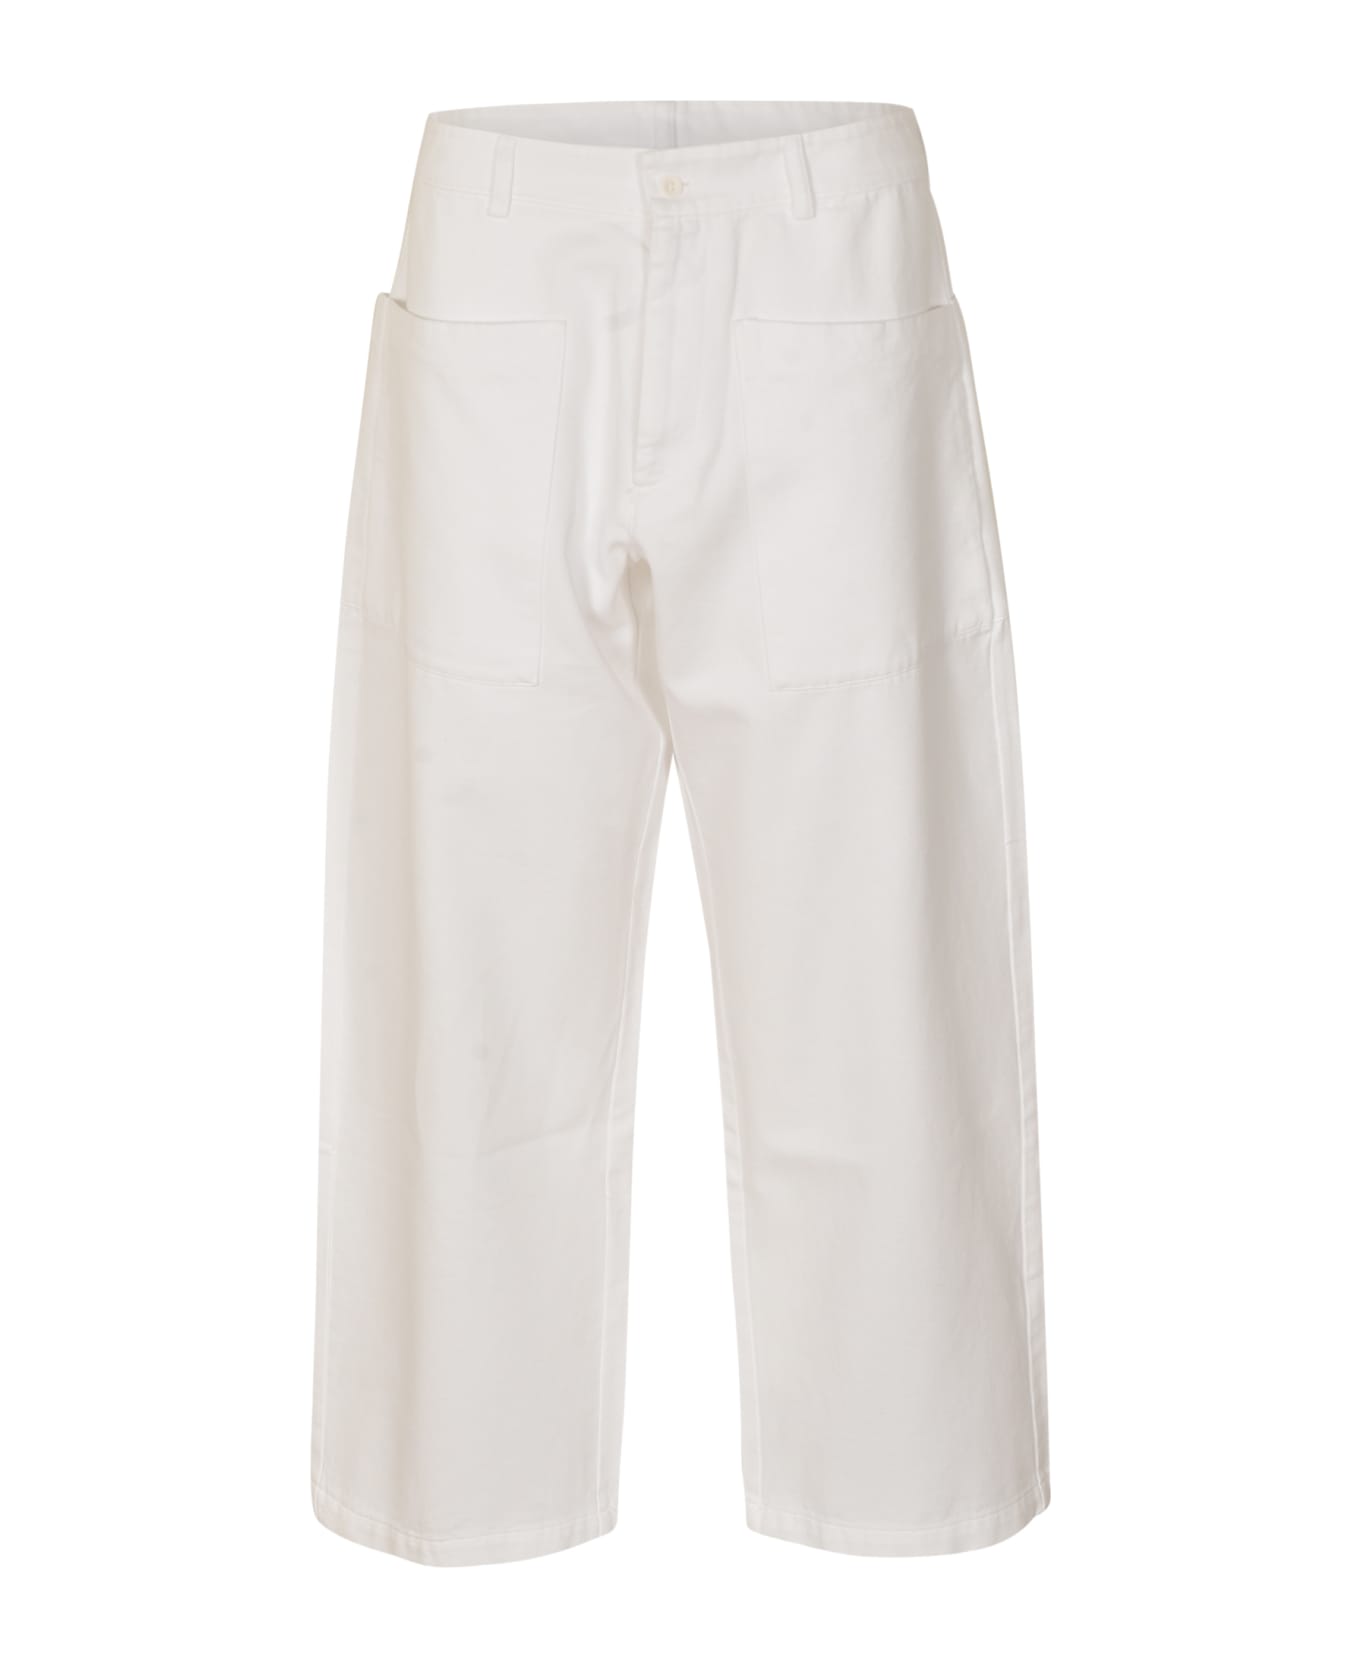 Labo.Art Fuoco Trousers - White